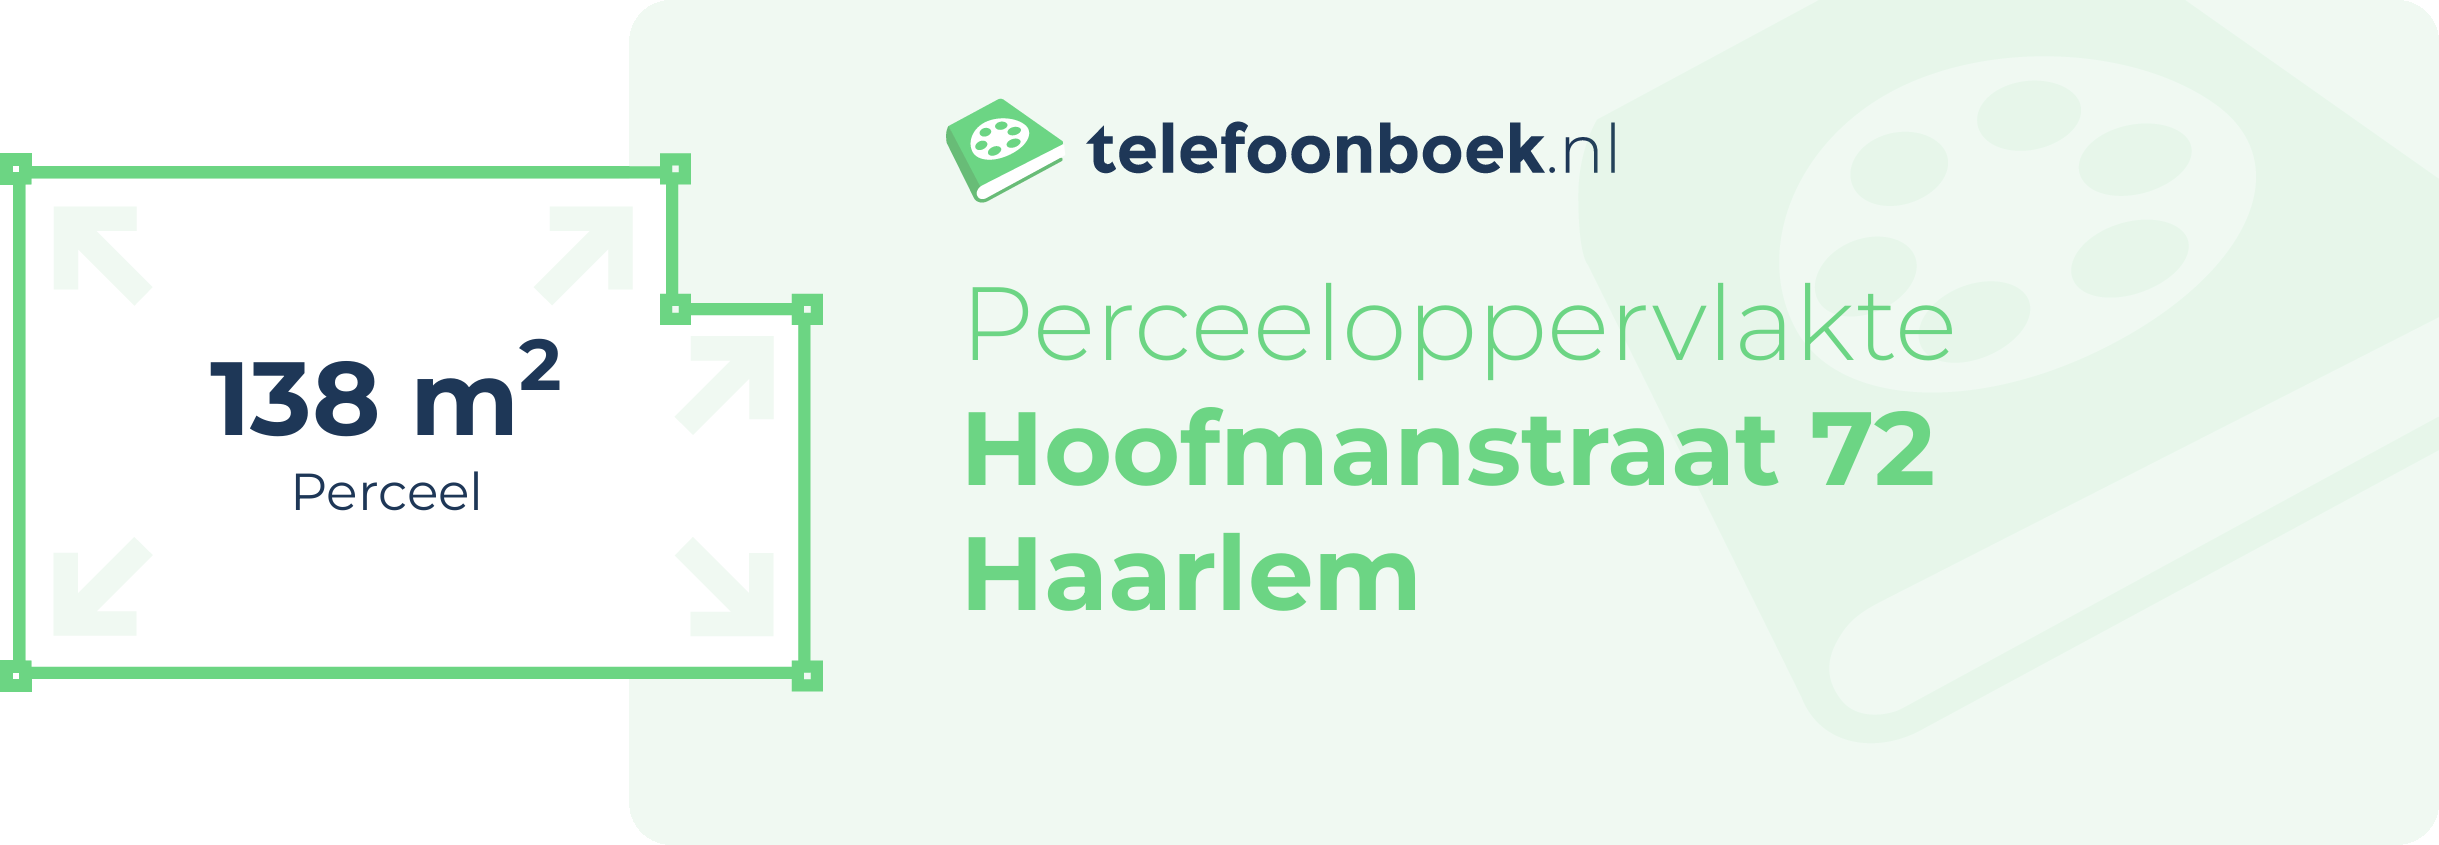 Perceeloppervlakte Hoofmanstraat 72 Haarlem